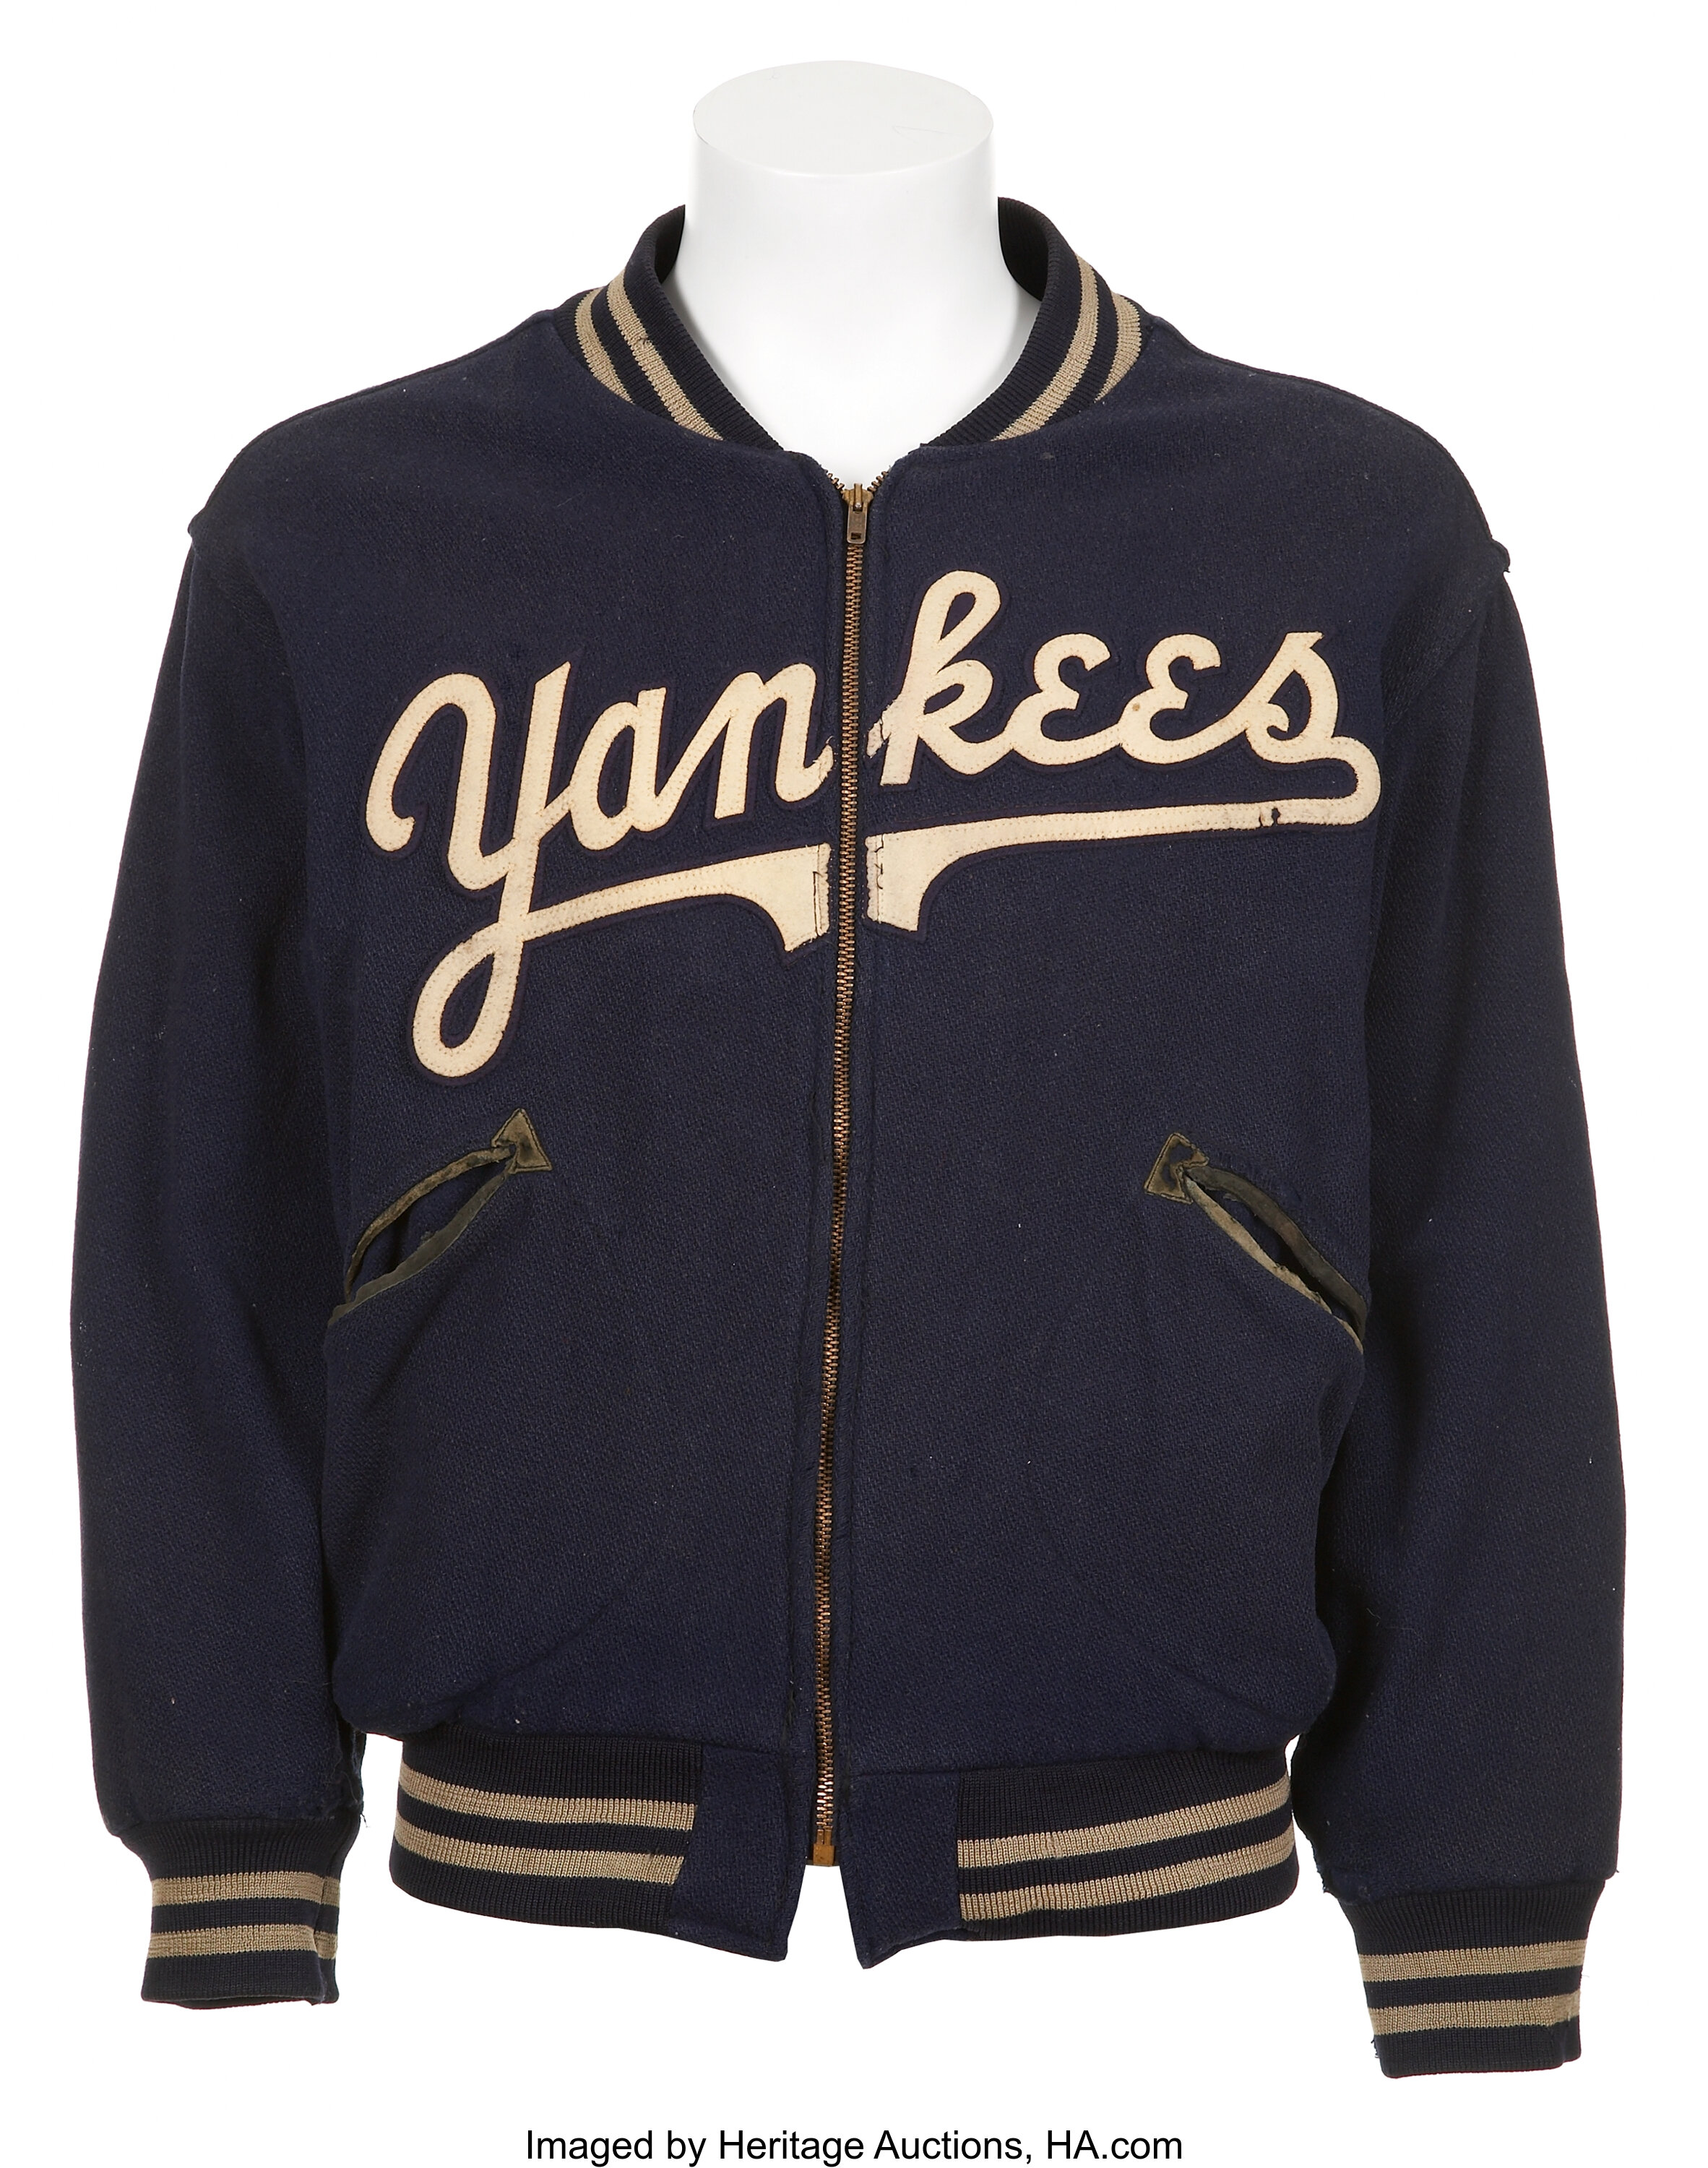 Vintage MLB New York Yankees V Neck Pullover Warm up Jacket